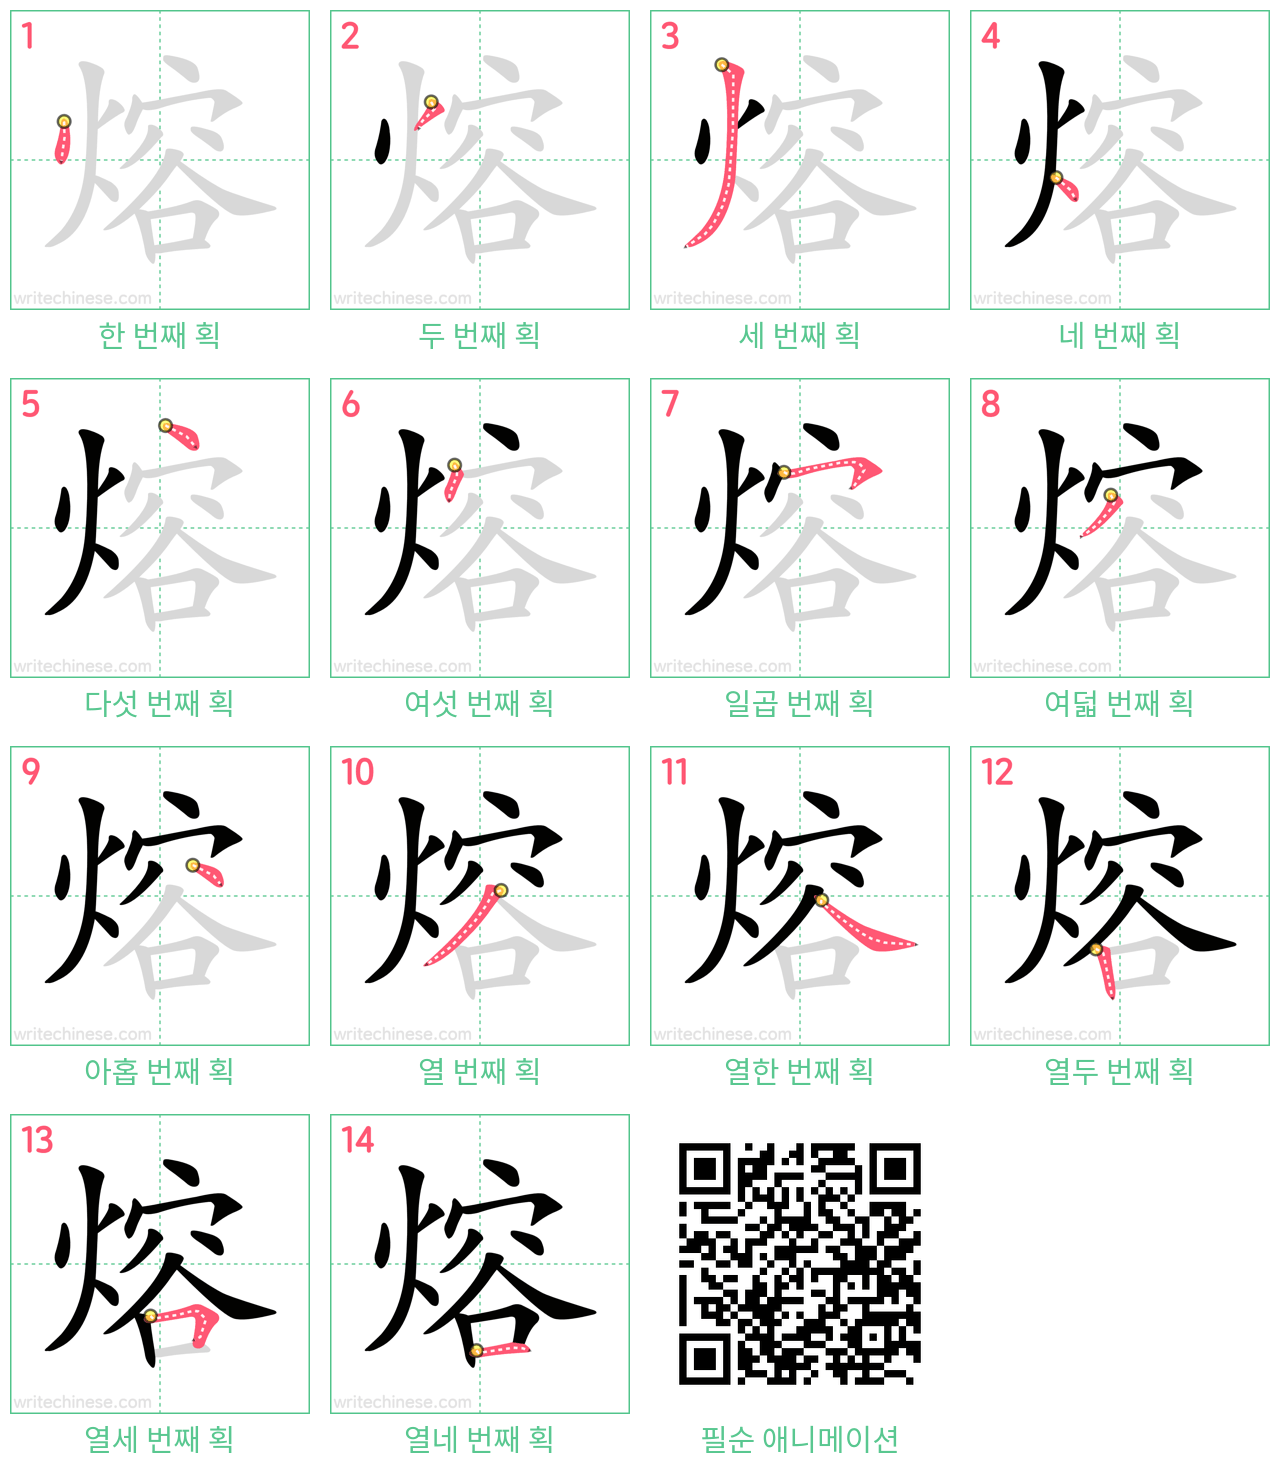 熔 step-by-step stroke order diagrams